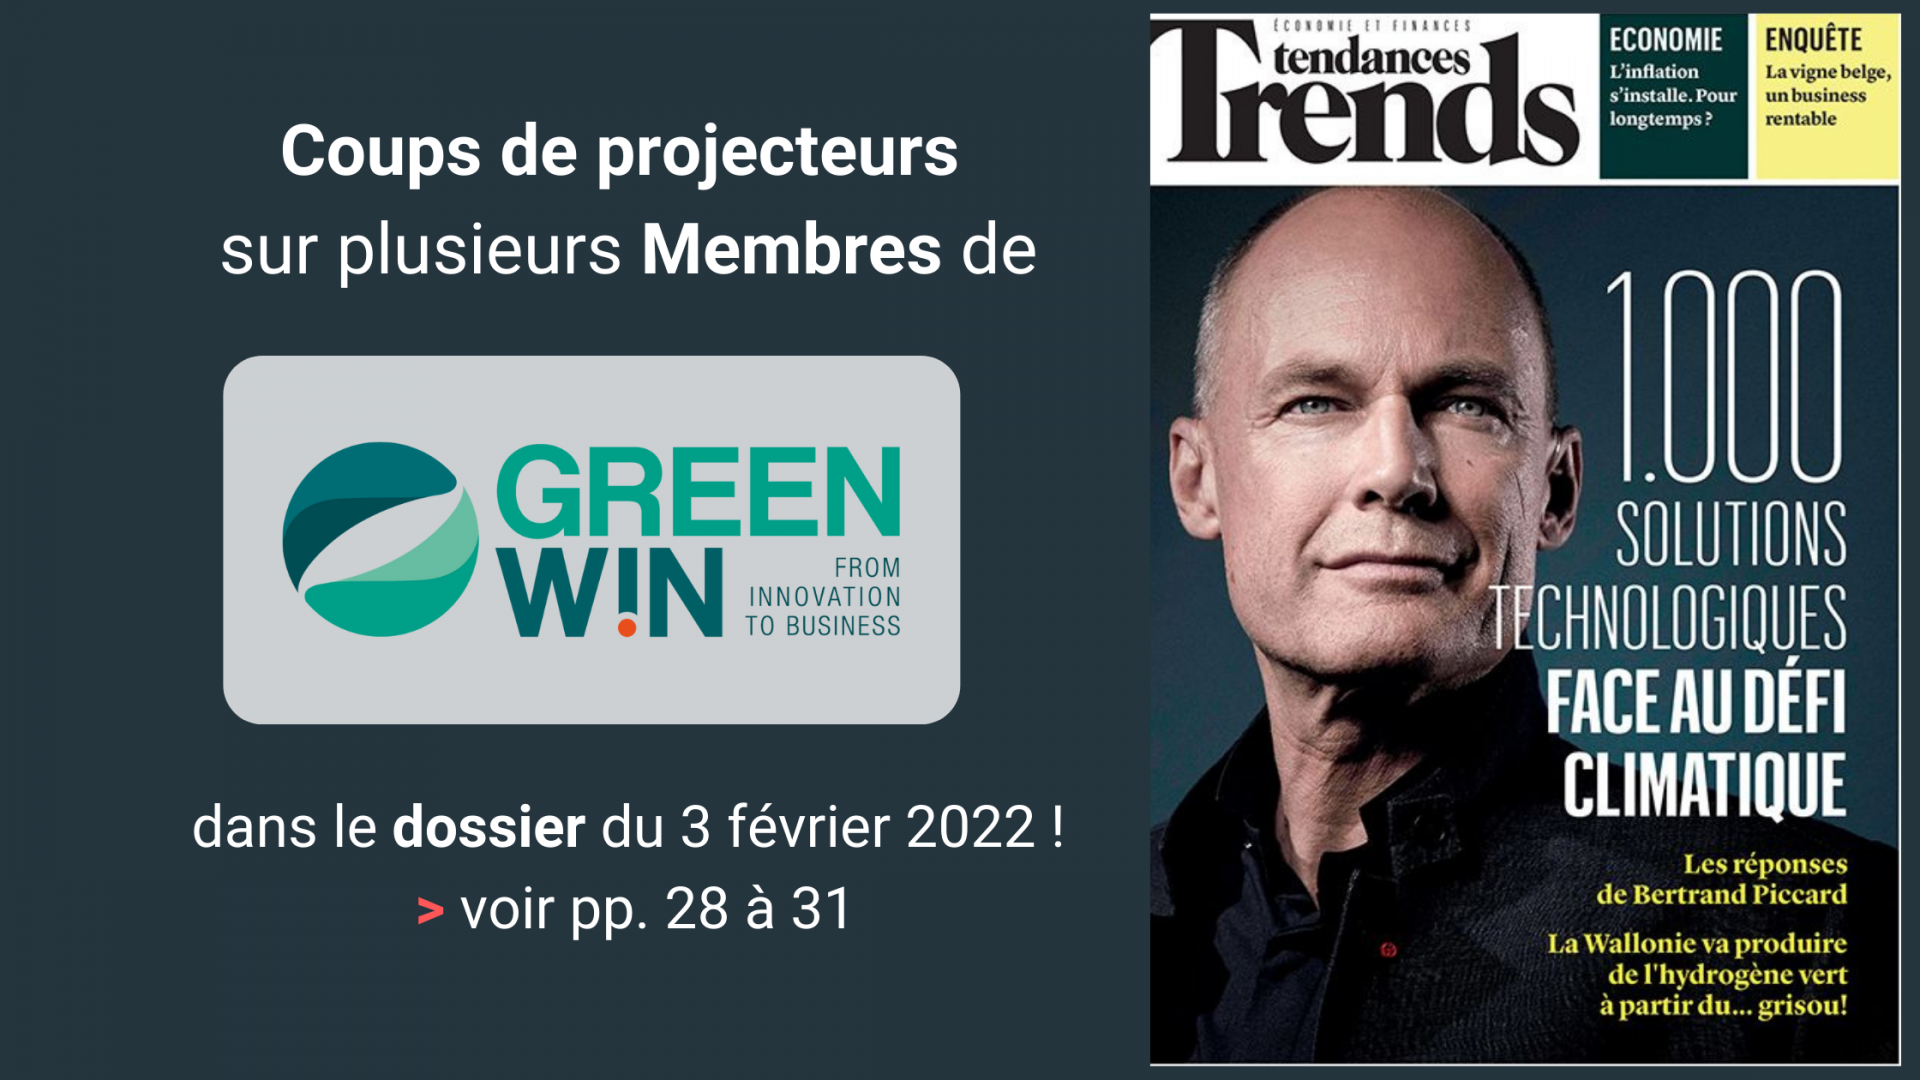 GreenWin et plusieurs de ses Membres sous les projecteurs dans le dossier du Trends Tendances